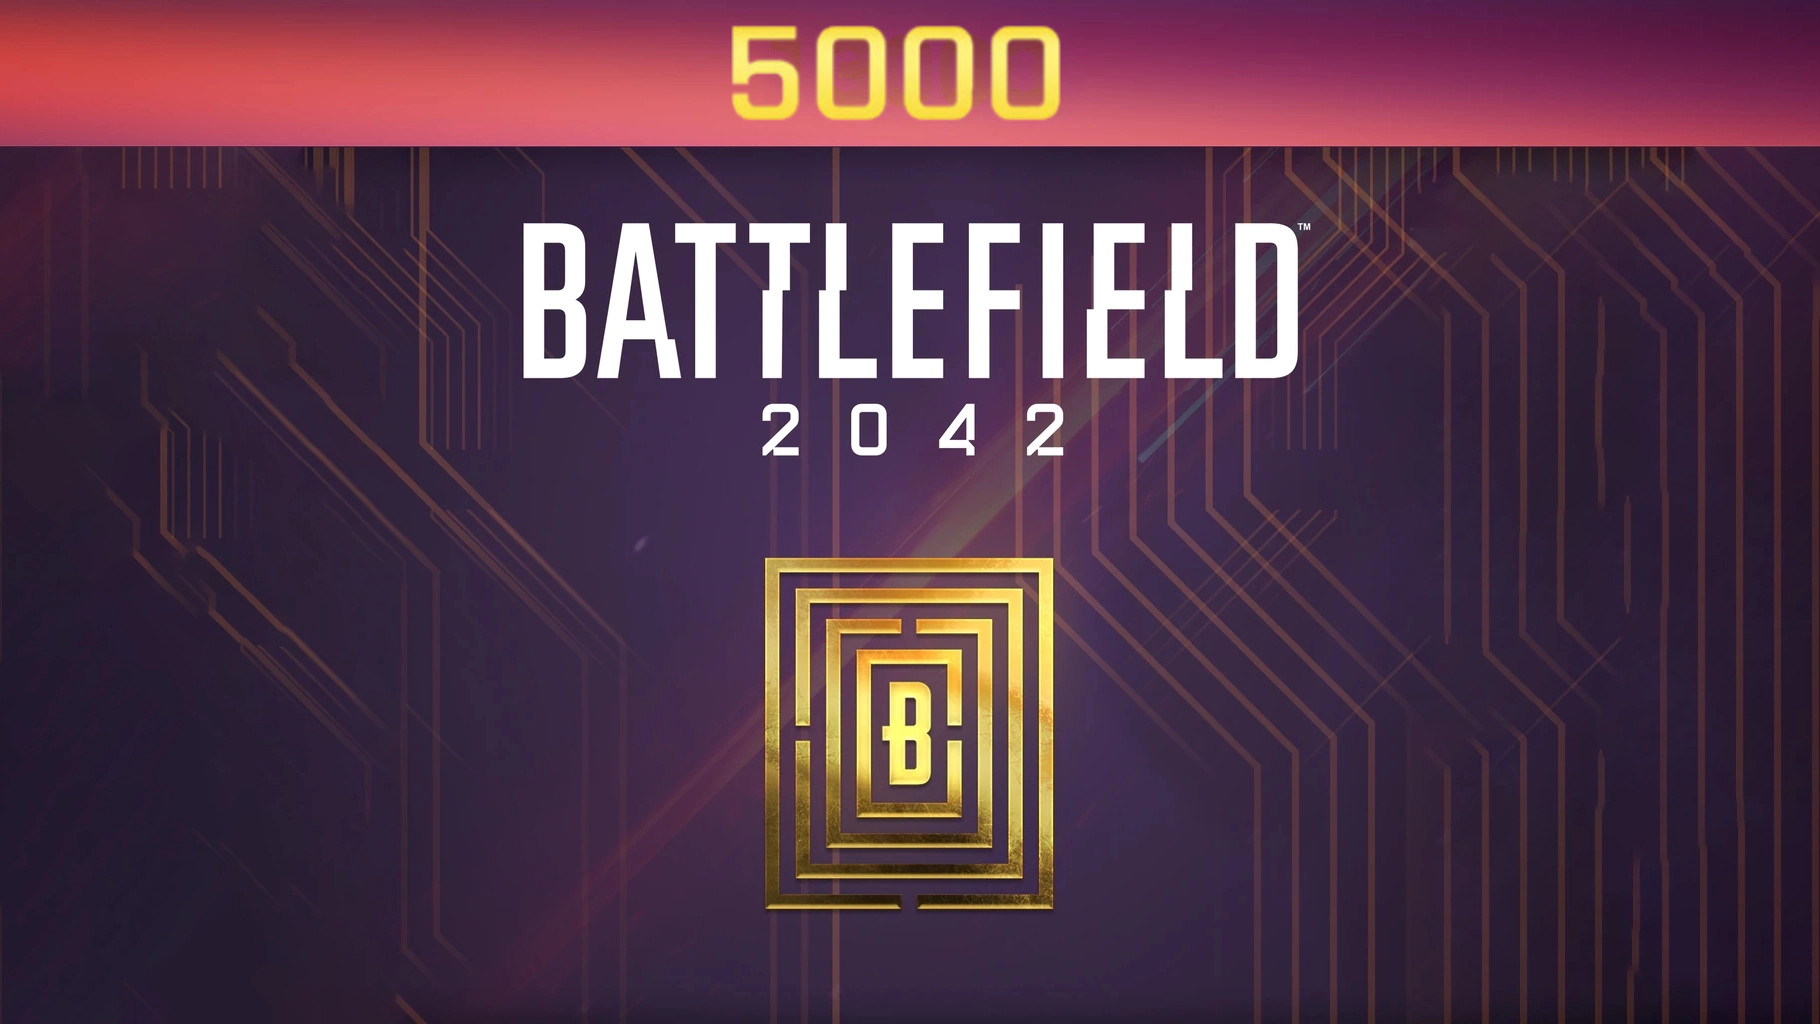 [$ 40.67] Battlefield 2042 - 5000 BFC Balance XBOX One / Xbox Series X|S CD Key